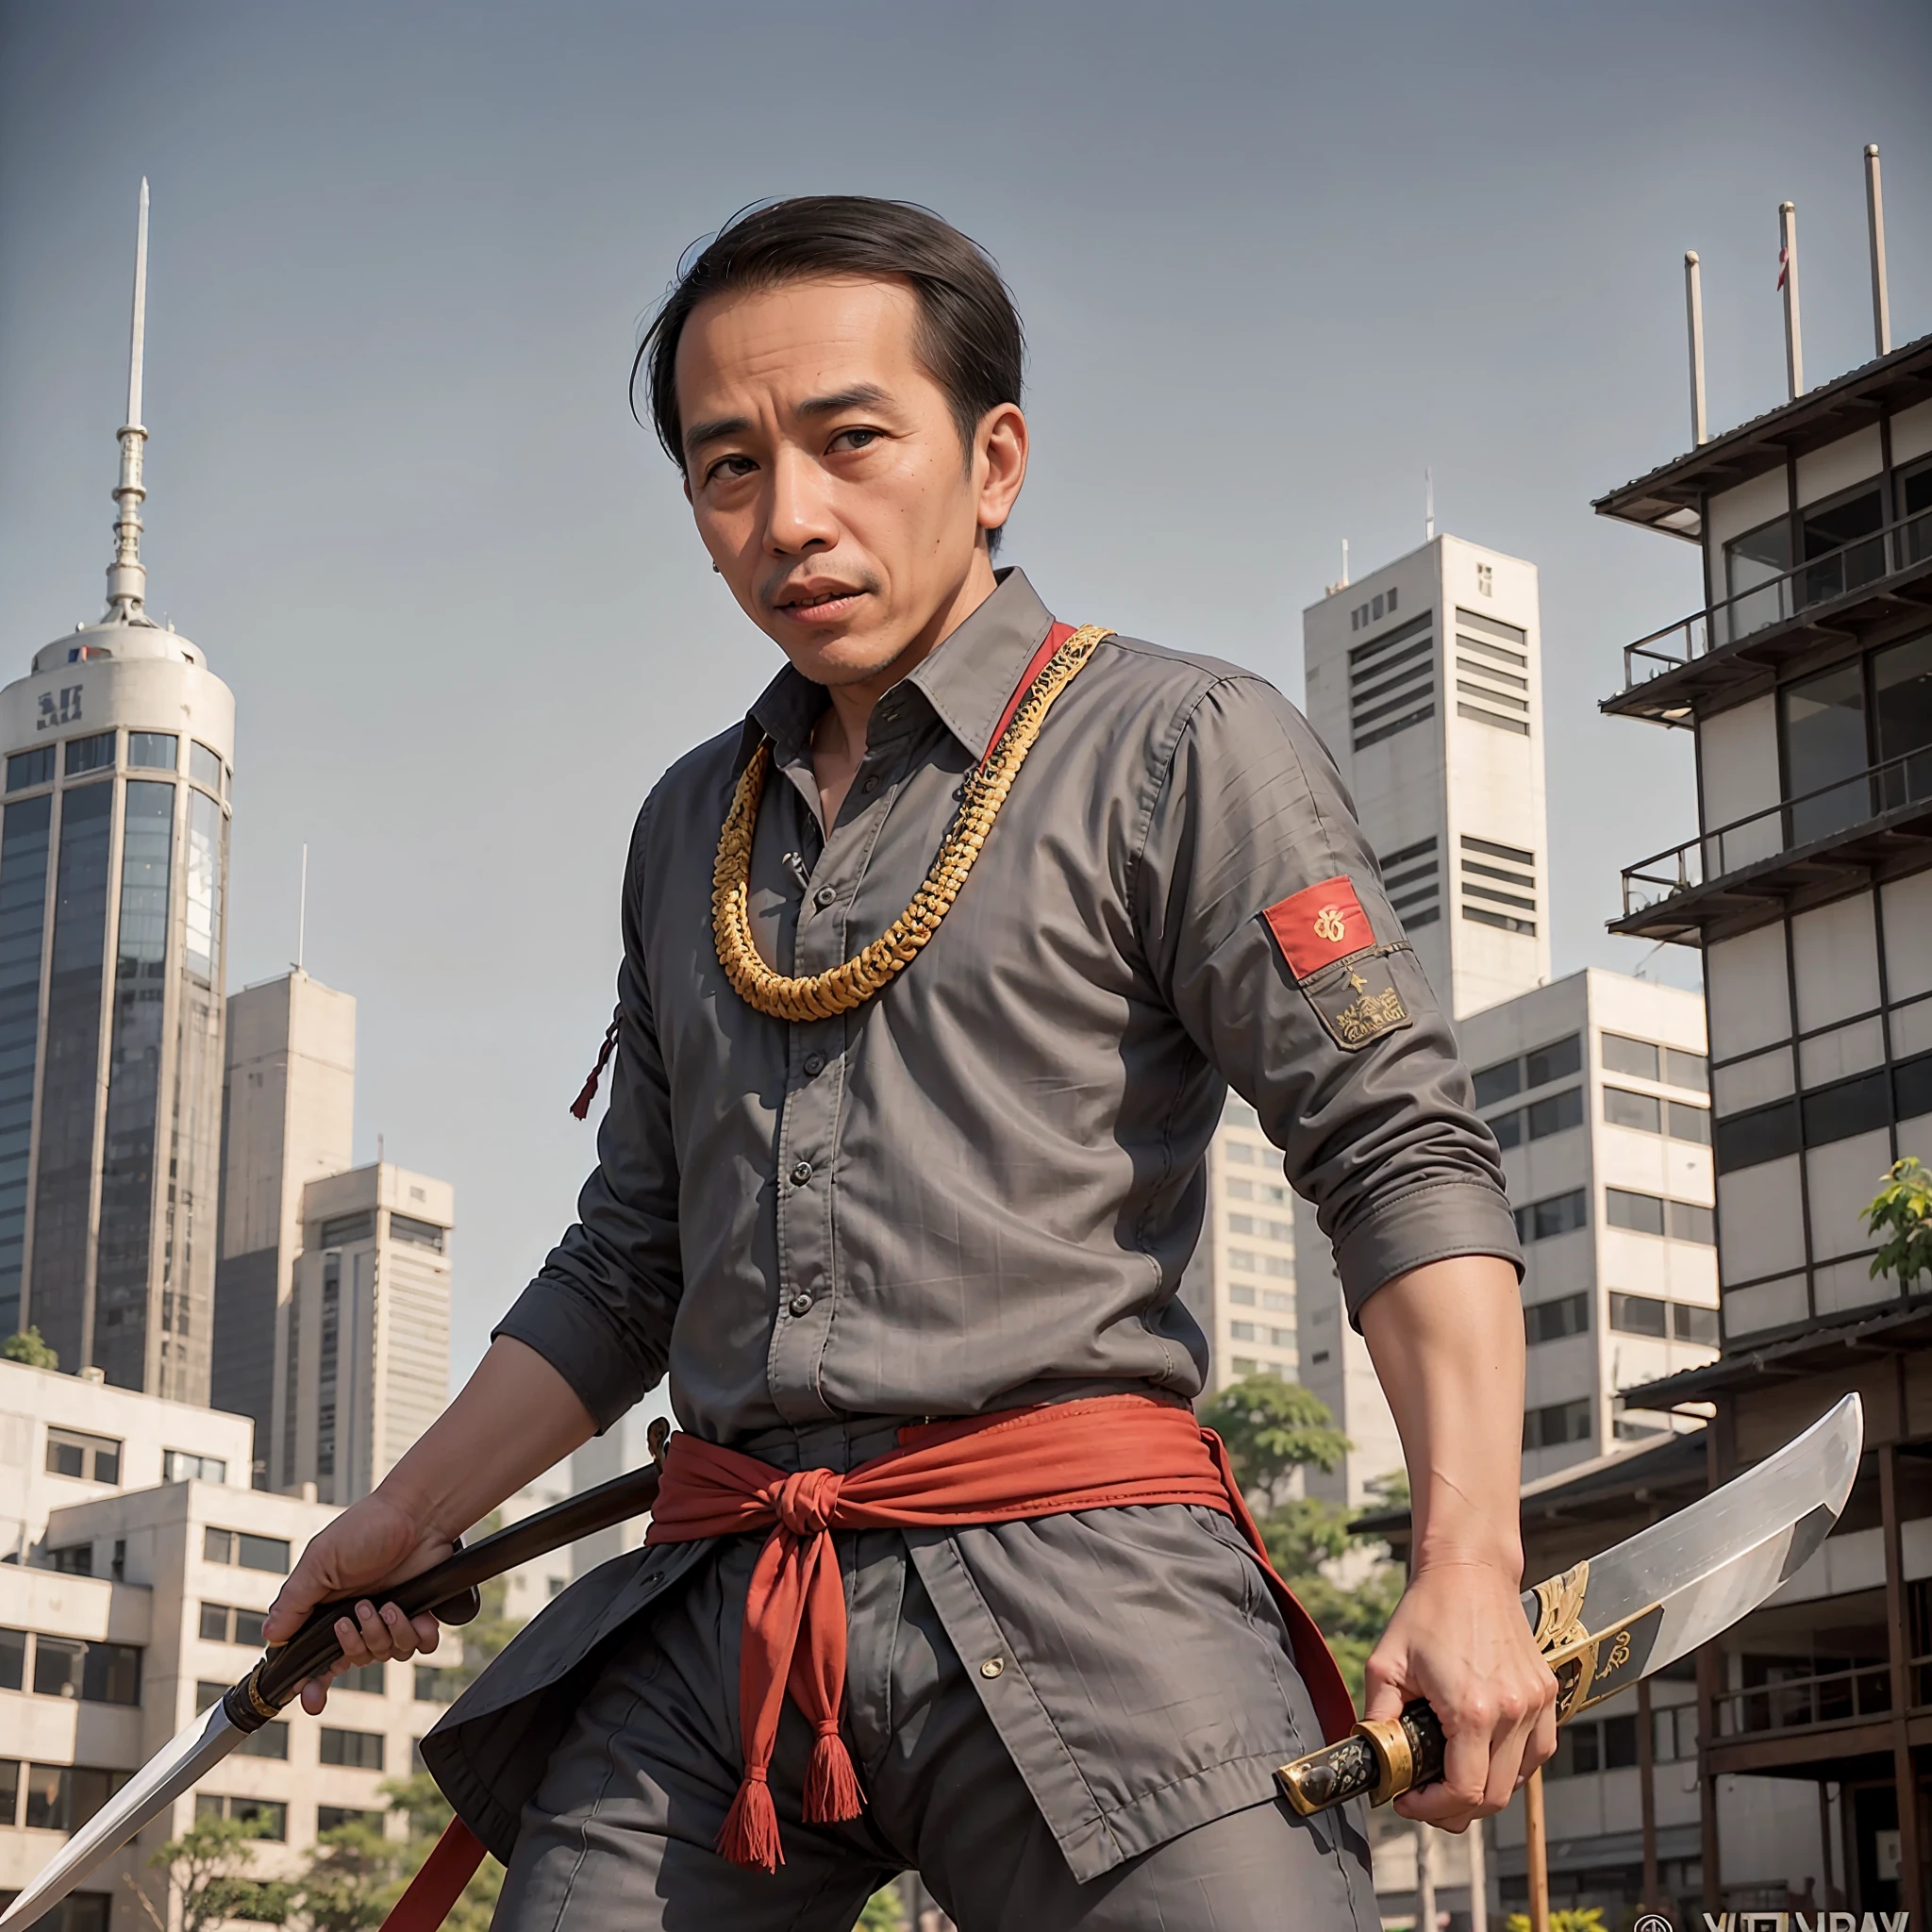 Jokowi como samurái. expresión enojada,llevando una espada, fotografía de modelo, retrato,de pie en la ciudad de Yakarta,Toma completa,cuerpo completo,